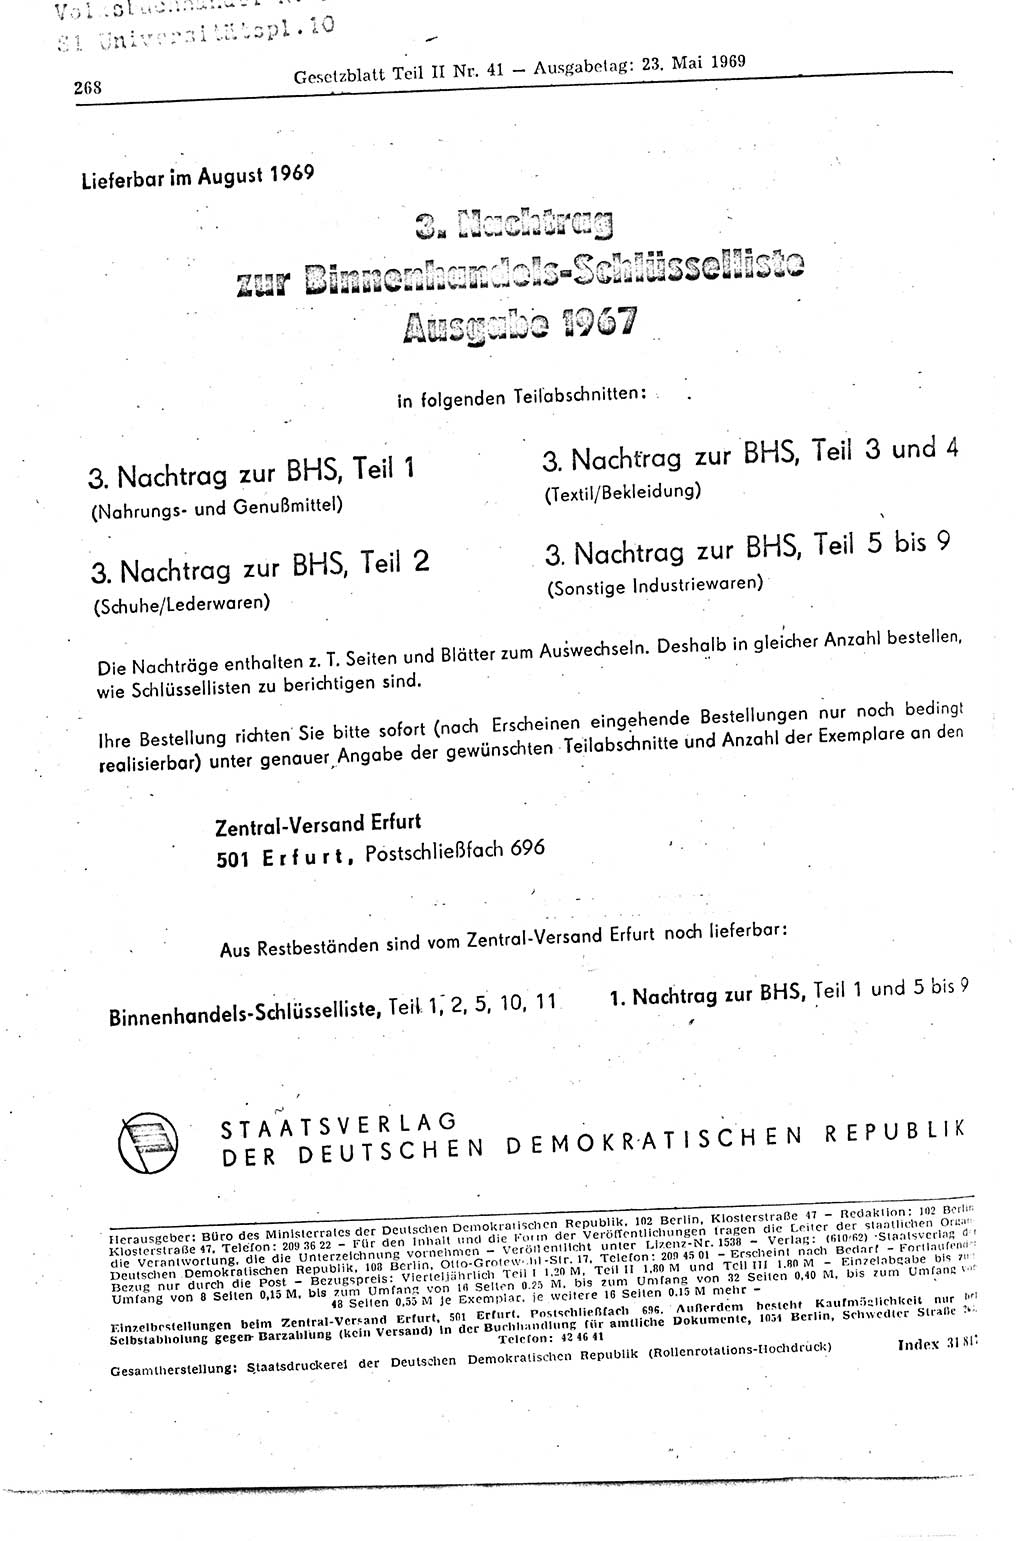 Gesetzblatt (GBl.) der Deutschen Demokratischen Republik (DDR) Teil ⅠⅠ 1969, Seite 268 (GBl. DDR ⅠⅠ 1969, S. 268)